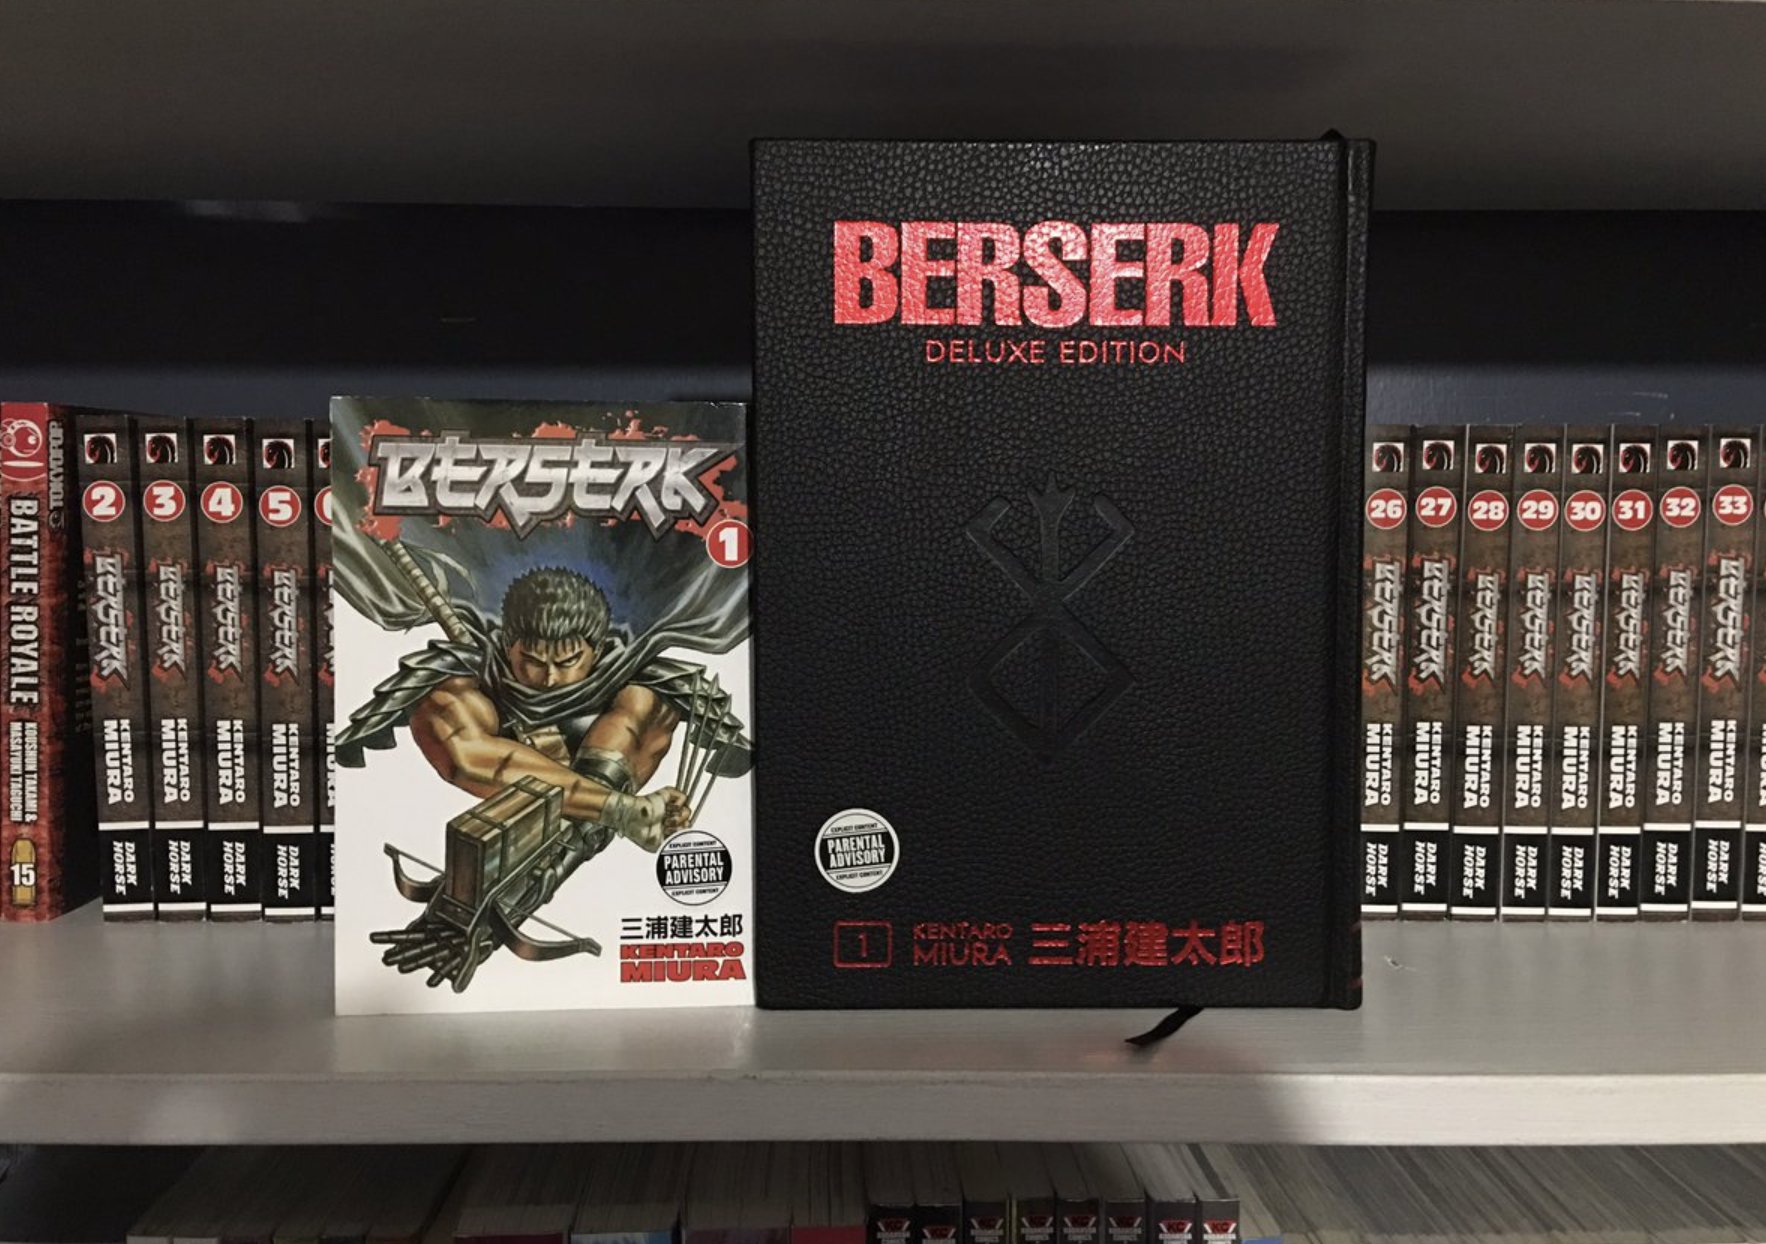 JWulen on X: Berserk Deluxe es la mejor edición que existe de